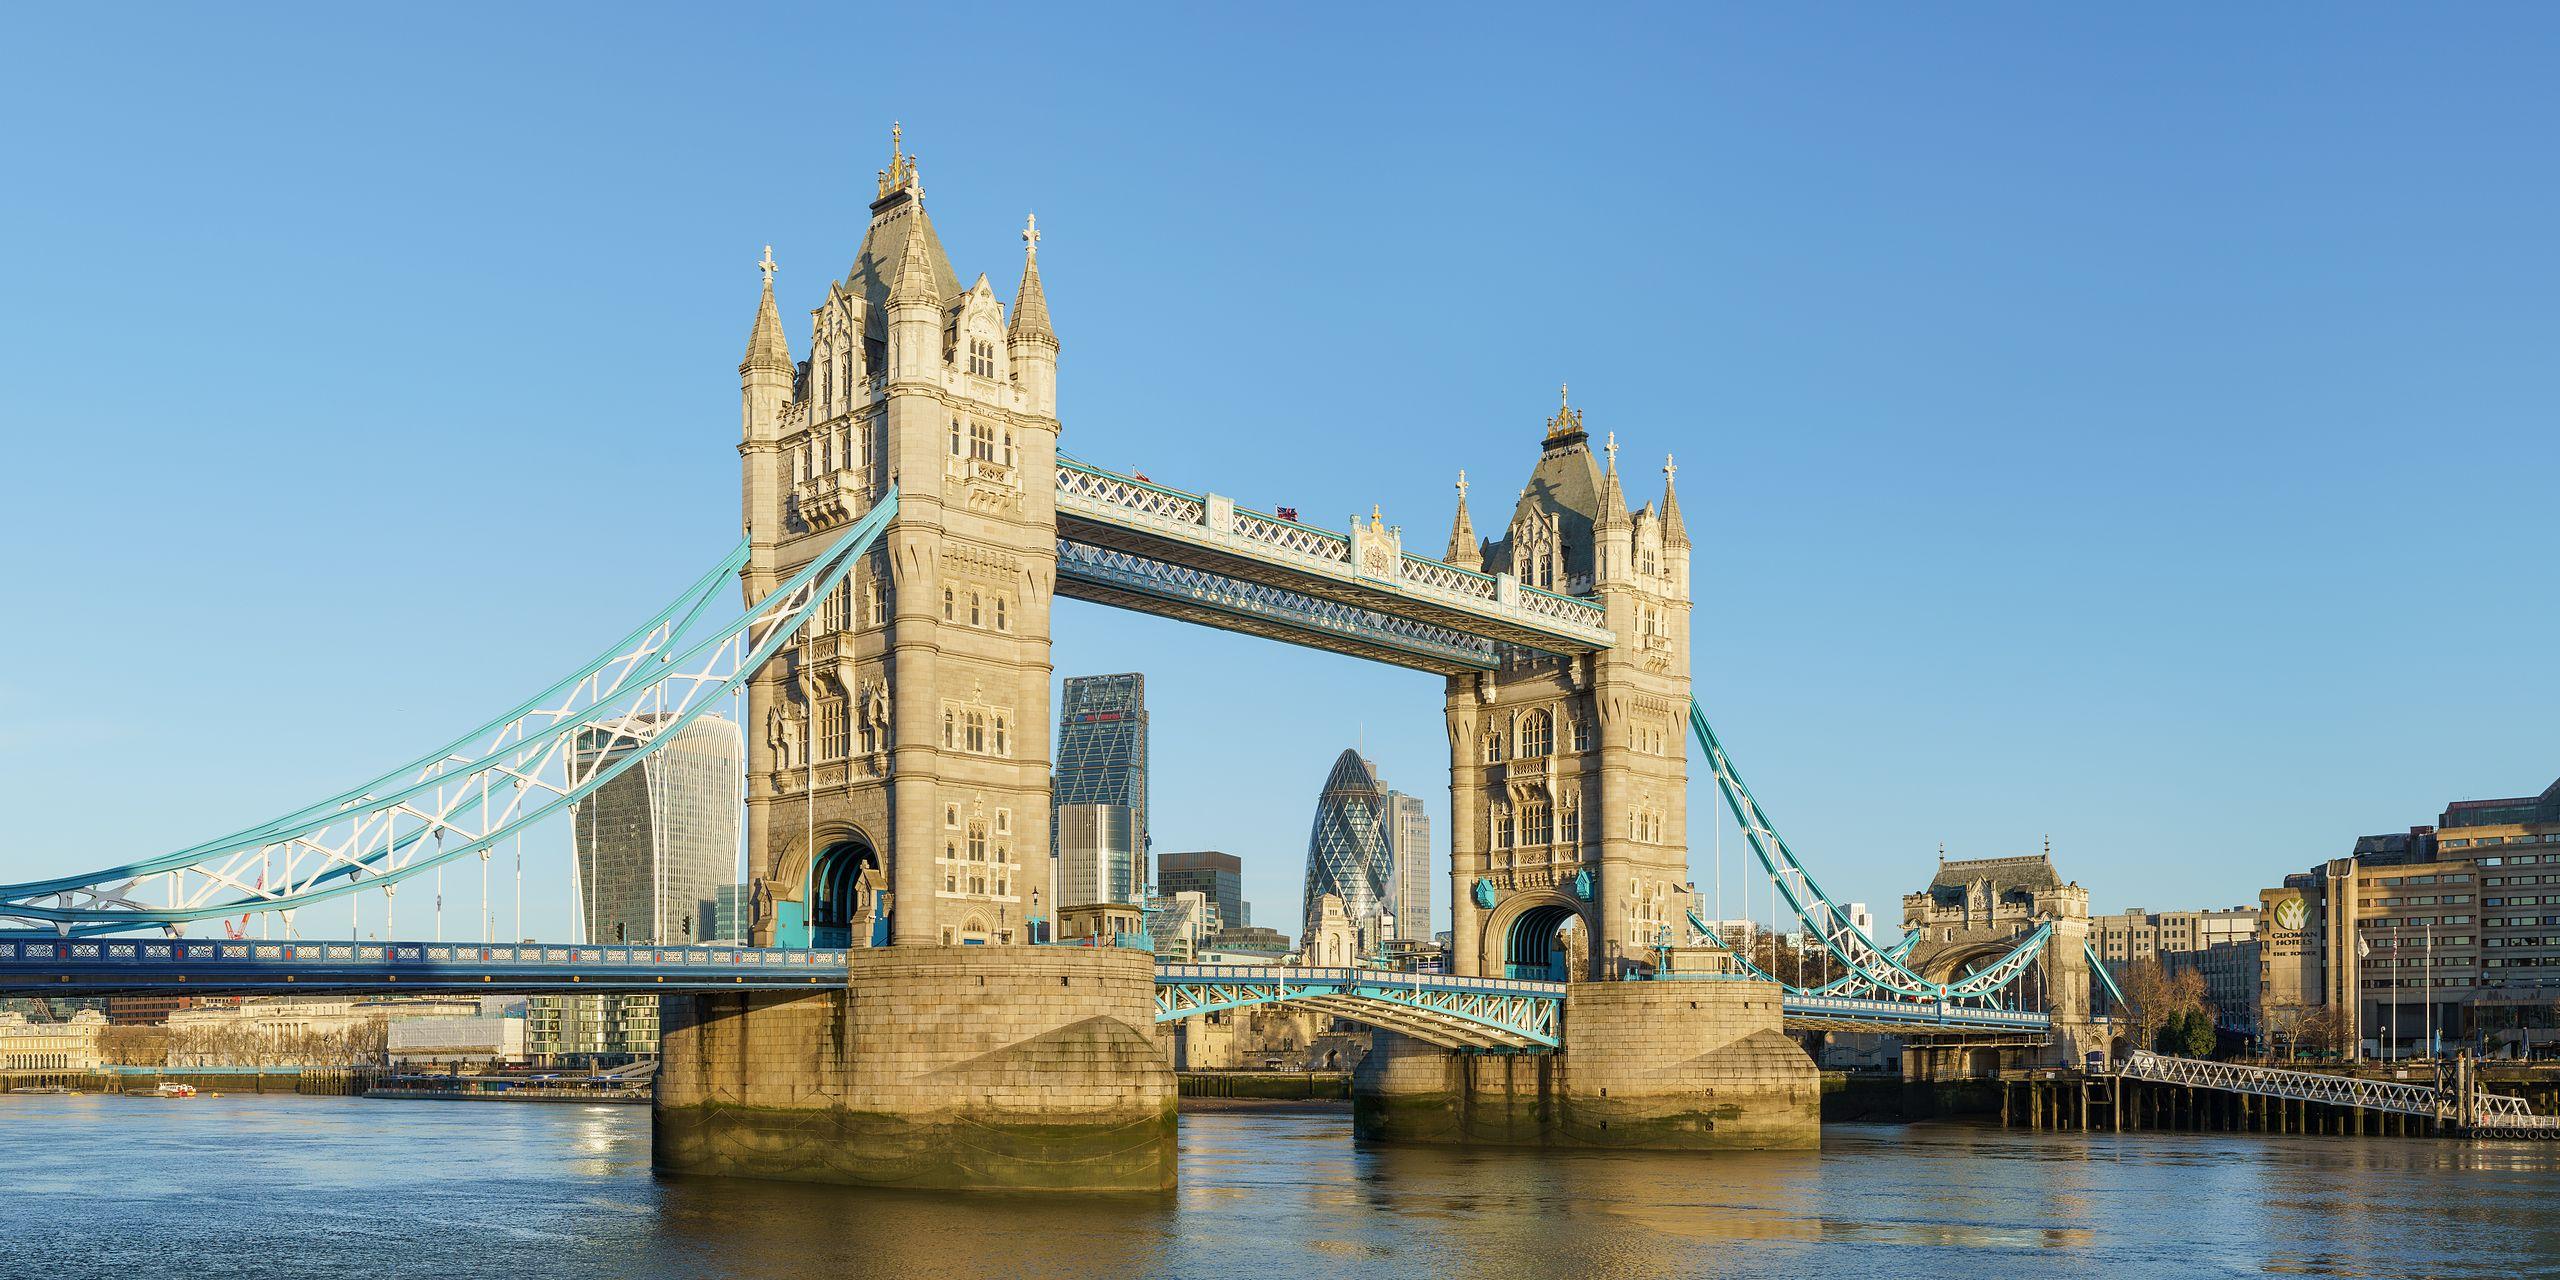 Η Tower Bridge στο Λονδίνο στον ποταμό Τάμεση